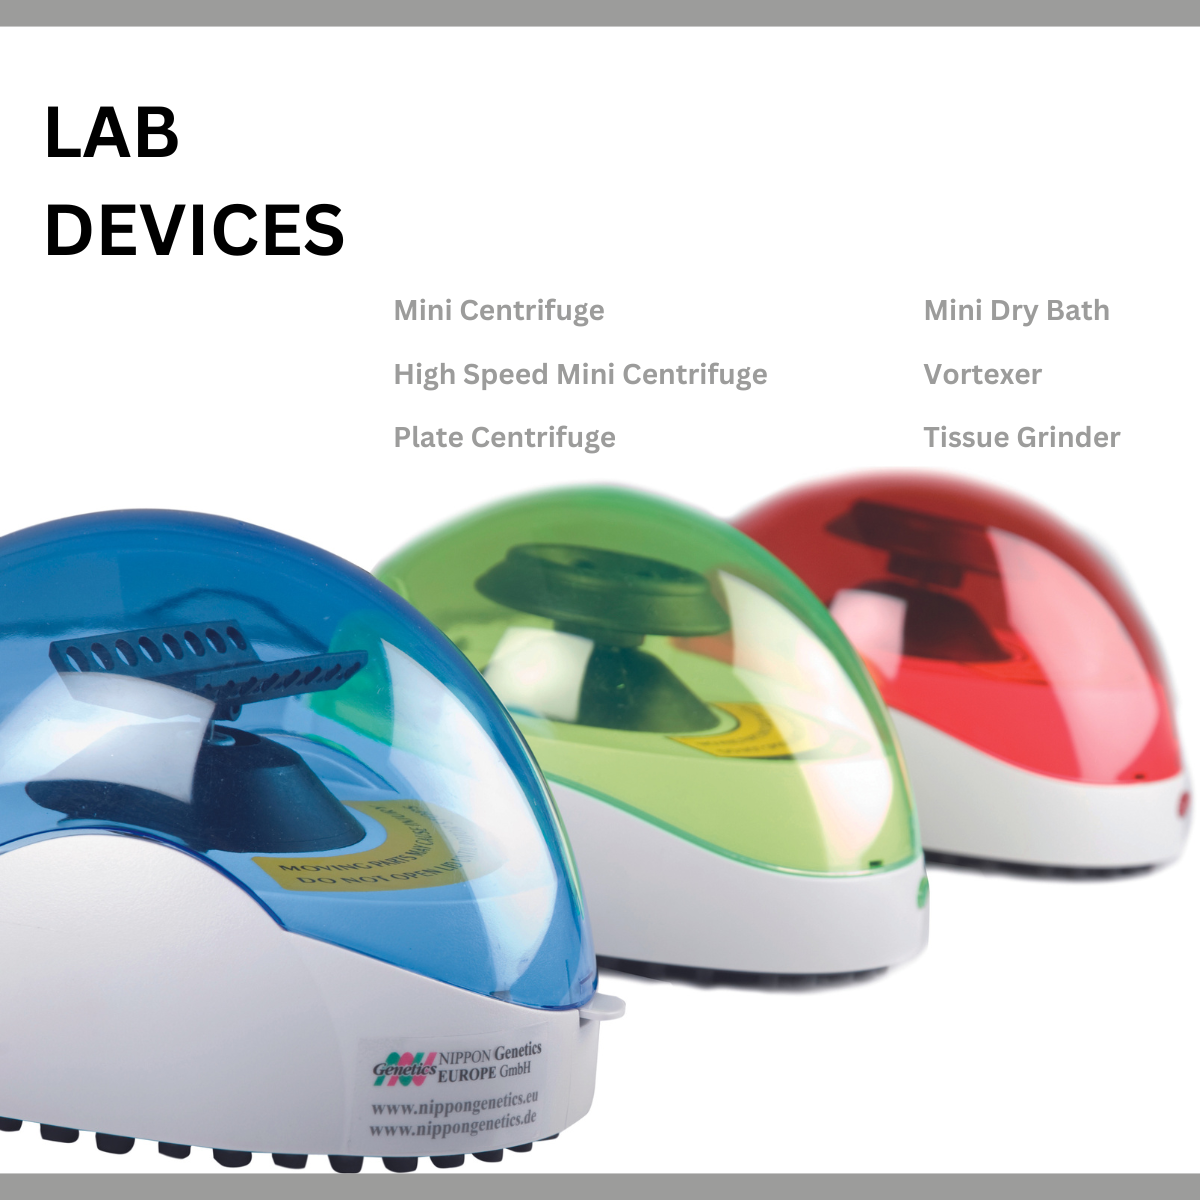 Lab devices, centrigufe, dry bath, vortexer, tissue grinder